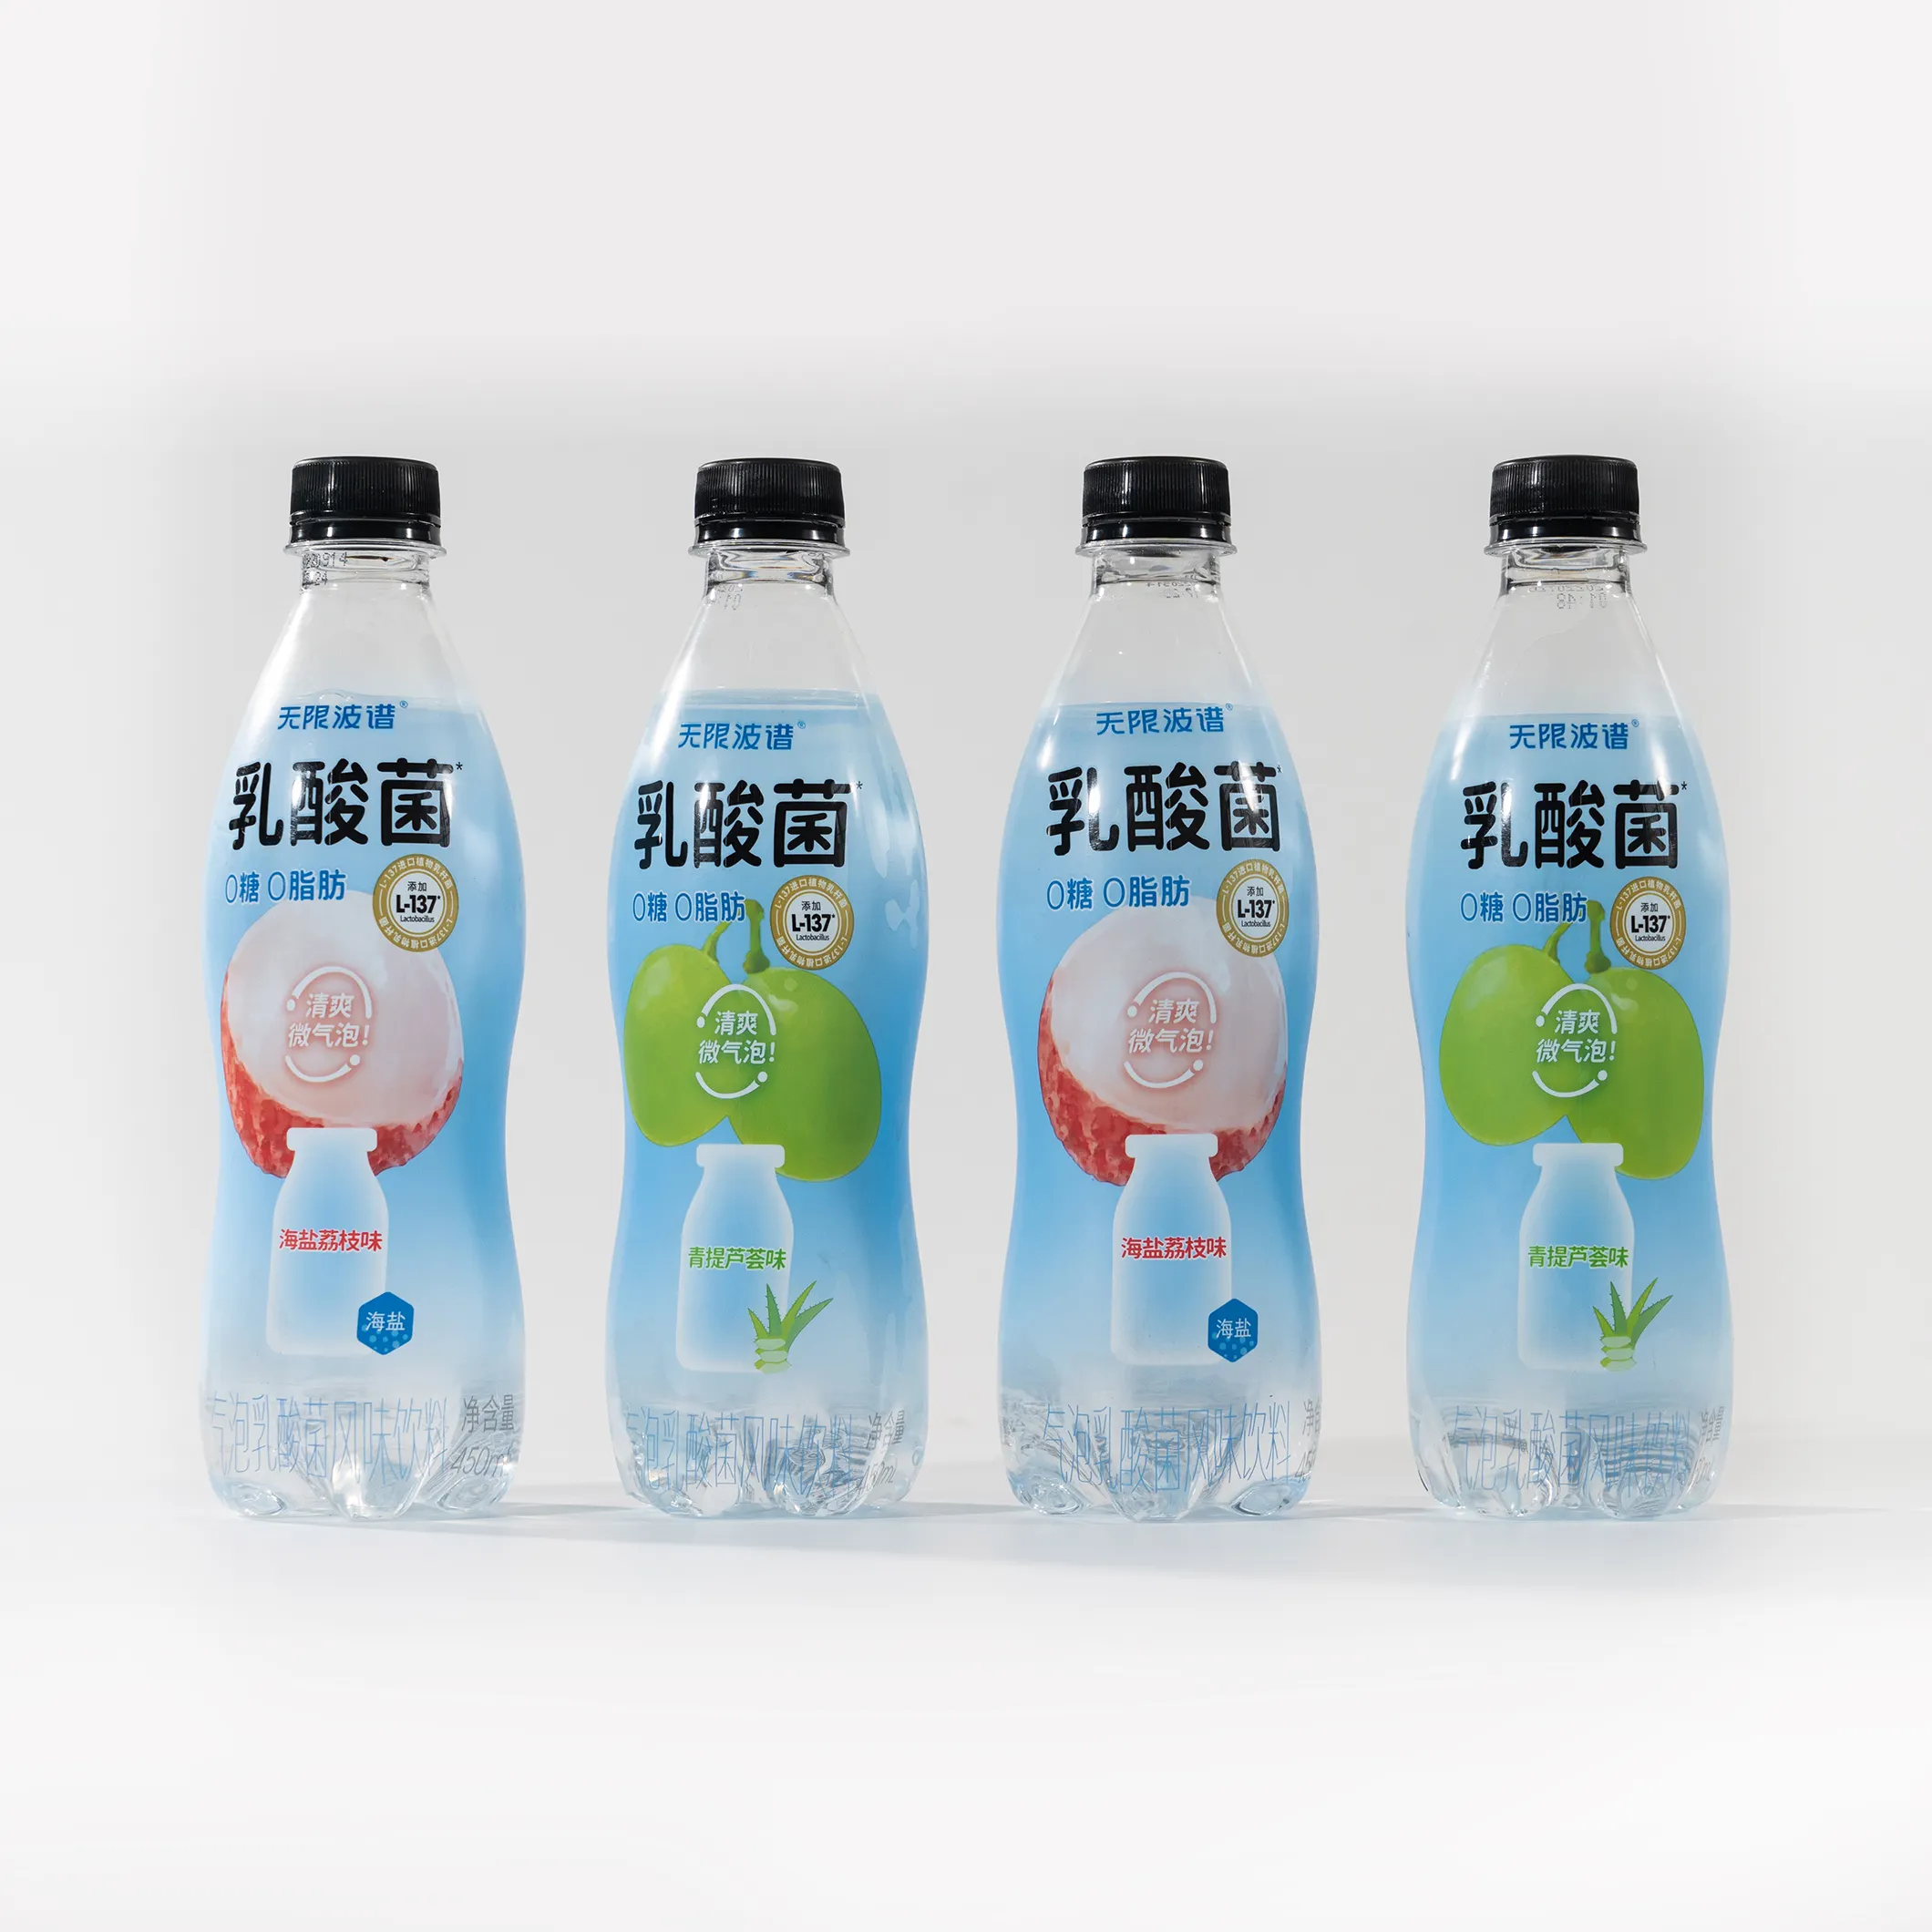 प्लास्टिक की बोतलों के लिए बीओपीपी रैपिंग लेबल